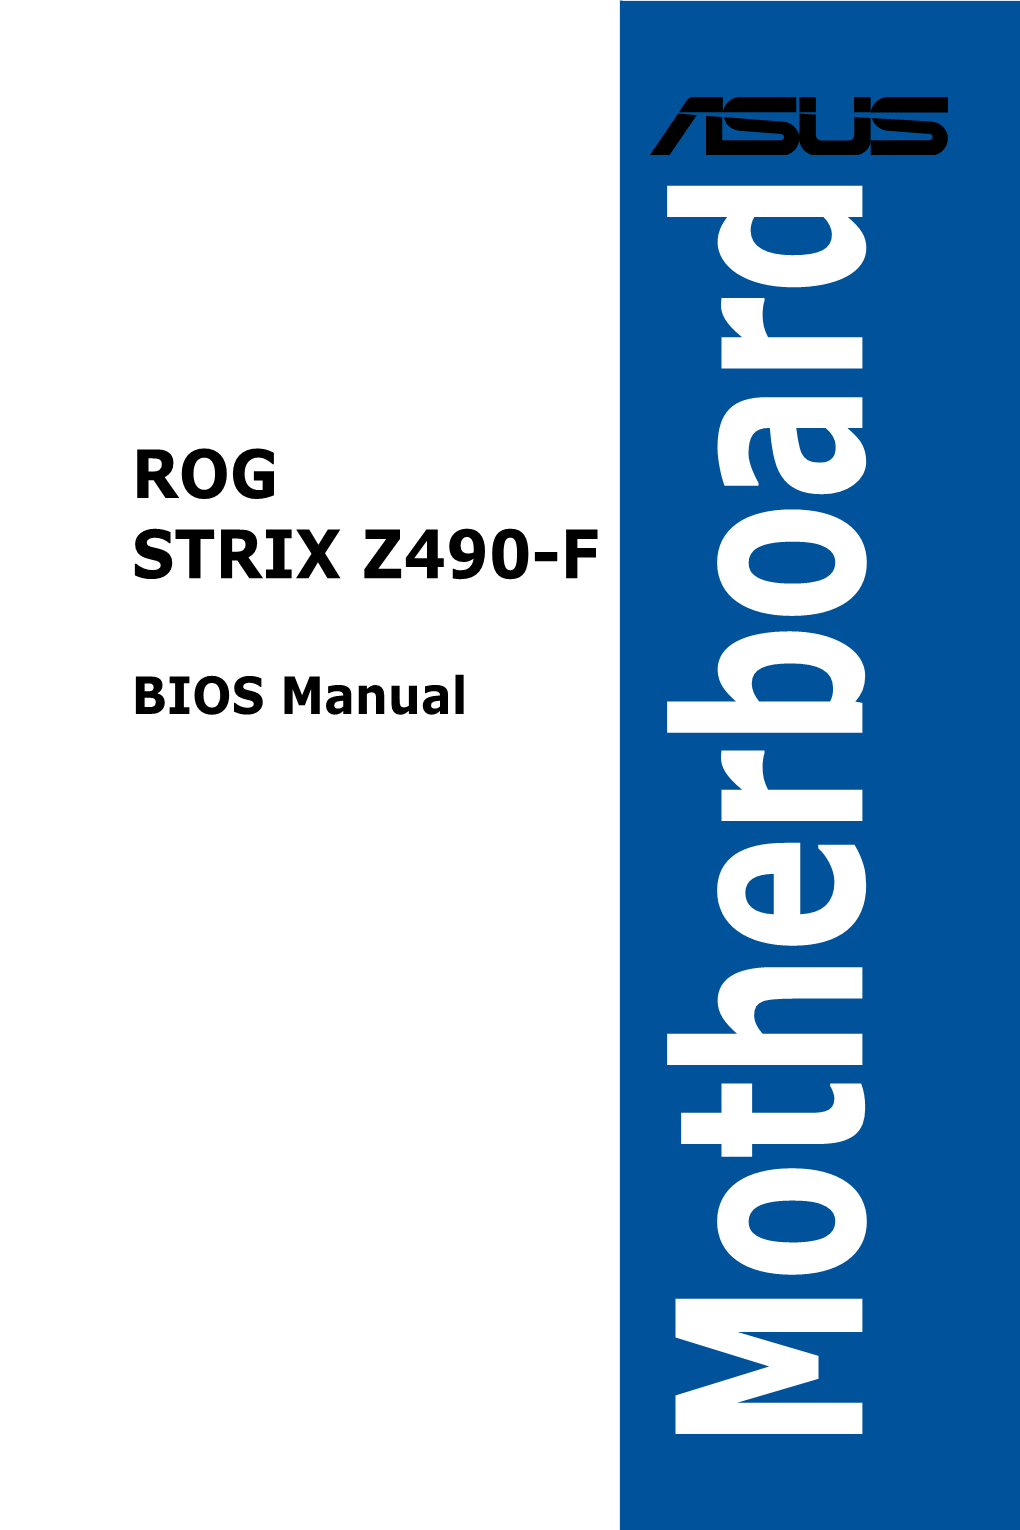 Rog Strix Z490-F